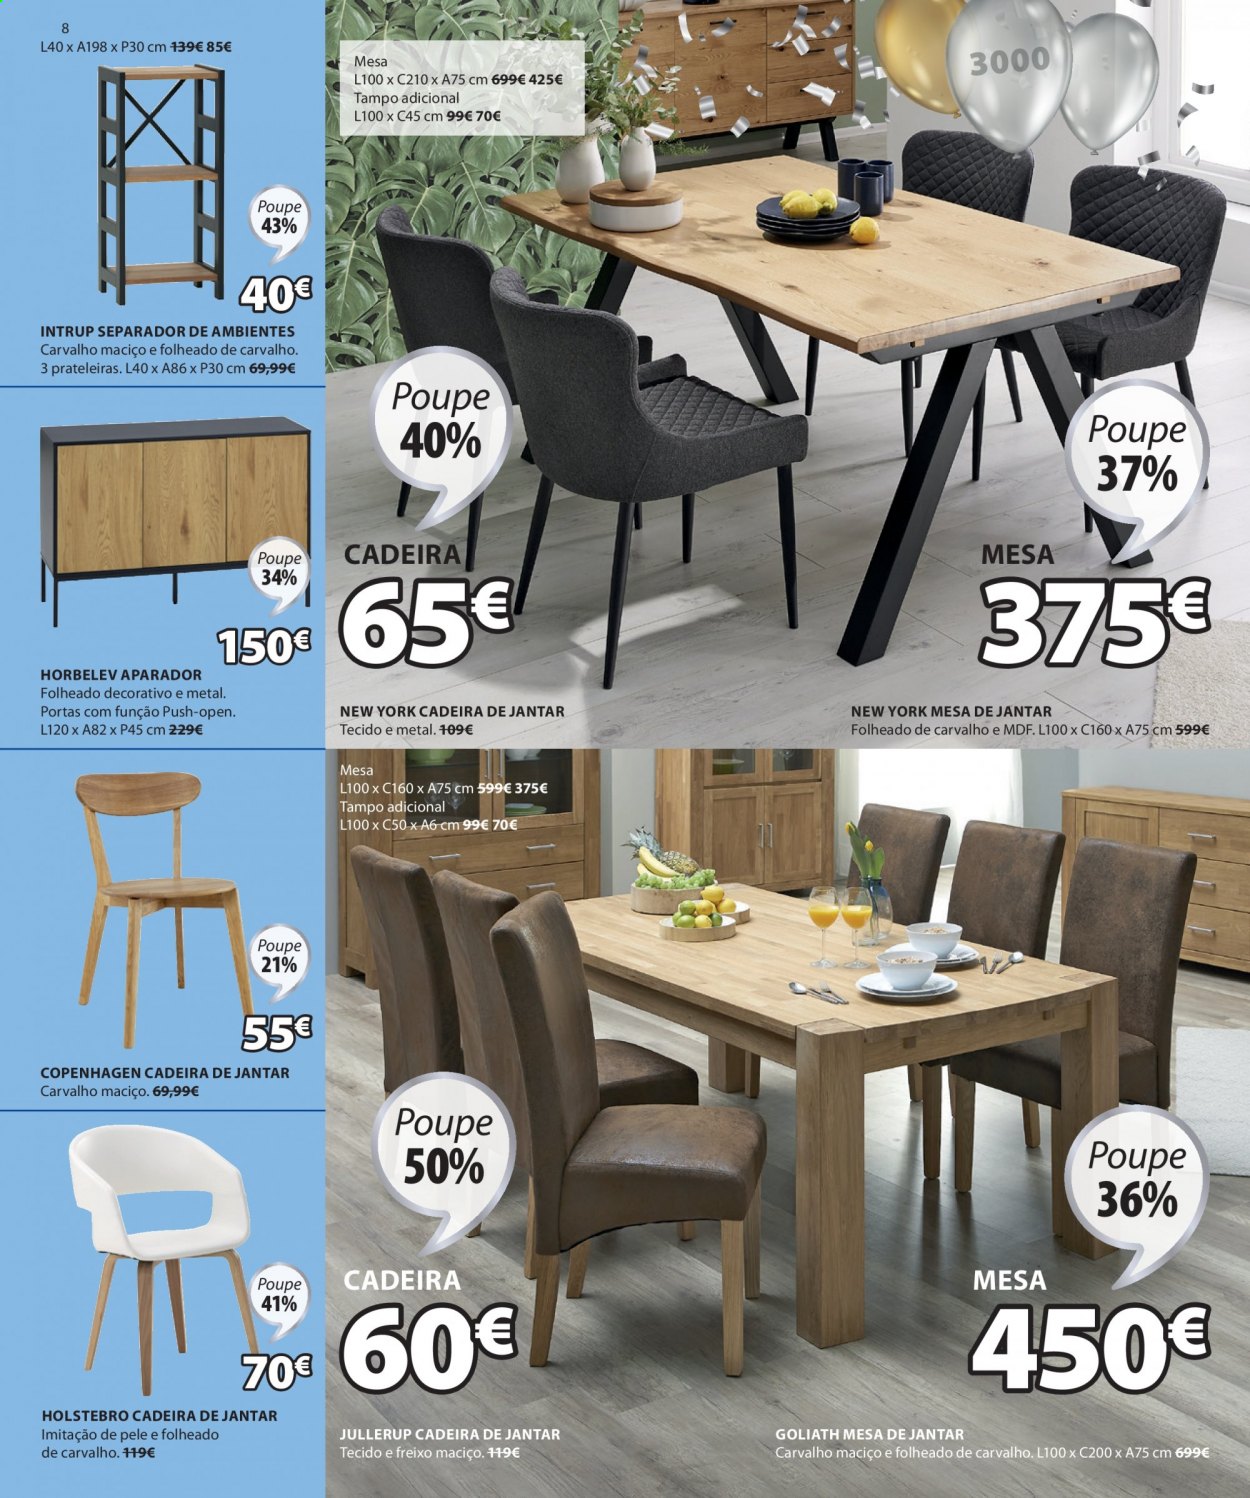 thumbnail - Folheto Jysk - 29.4.2021 - 12.5.2021 - Produtos em promoção - mesa de jantar, cadeira, aparador. Página 8.